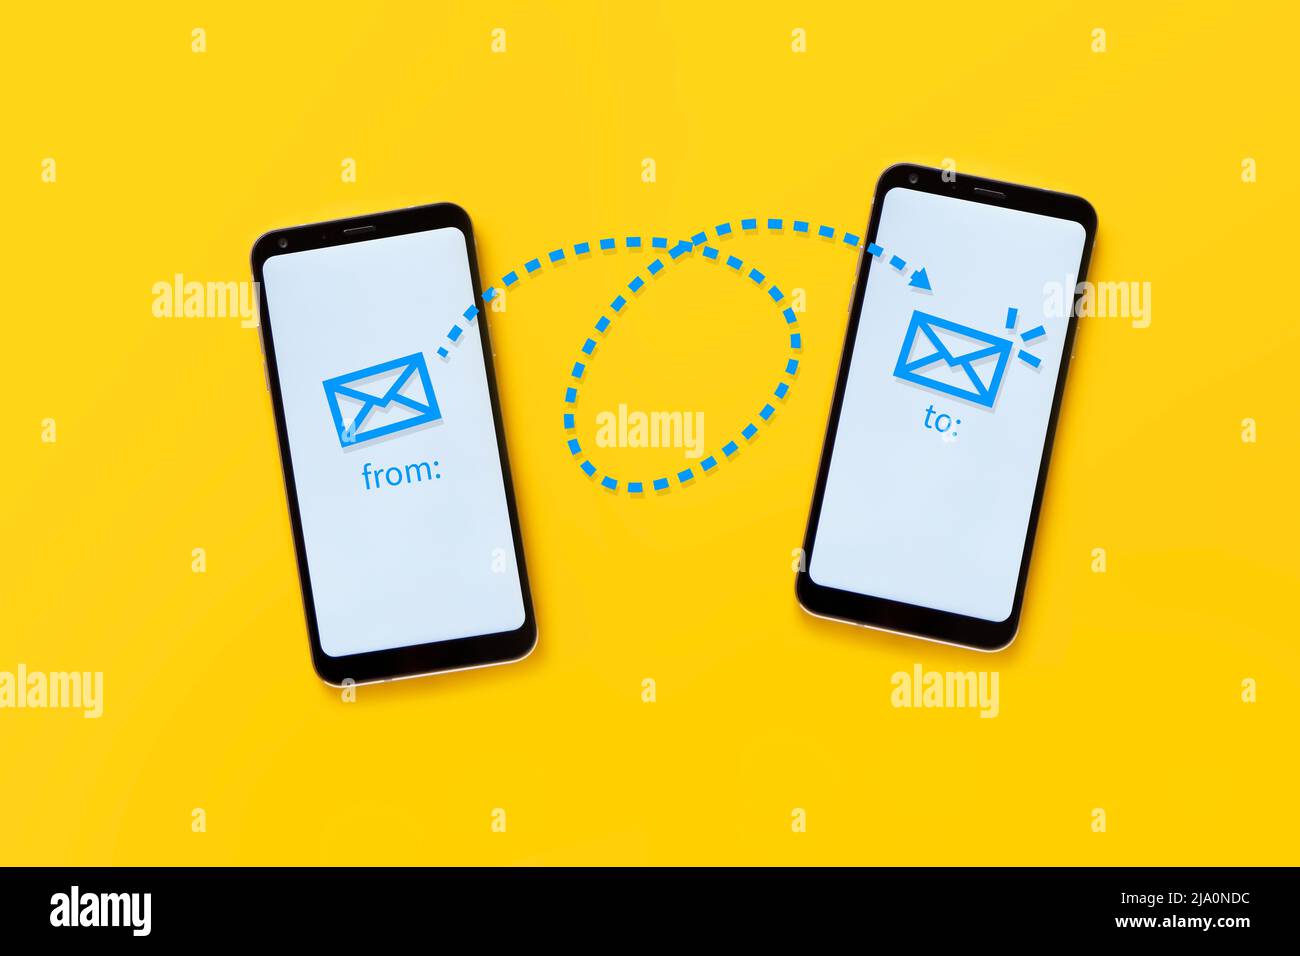 concepto de correo electrónico. Dos teléfonos móviles sobre fondo amarillo que muestran el funcionamiento del correo electrónico a través de un dibujo. Foto de stock